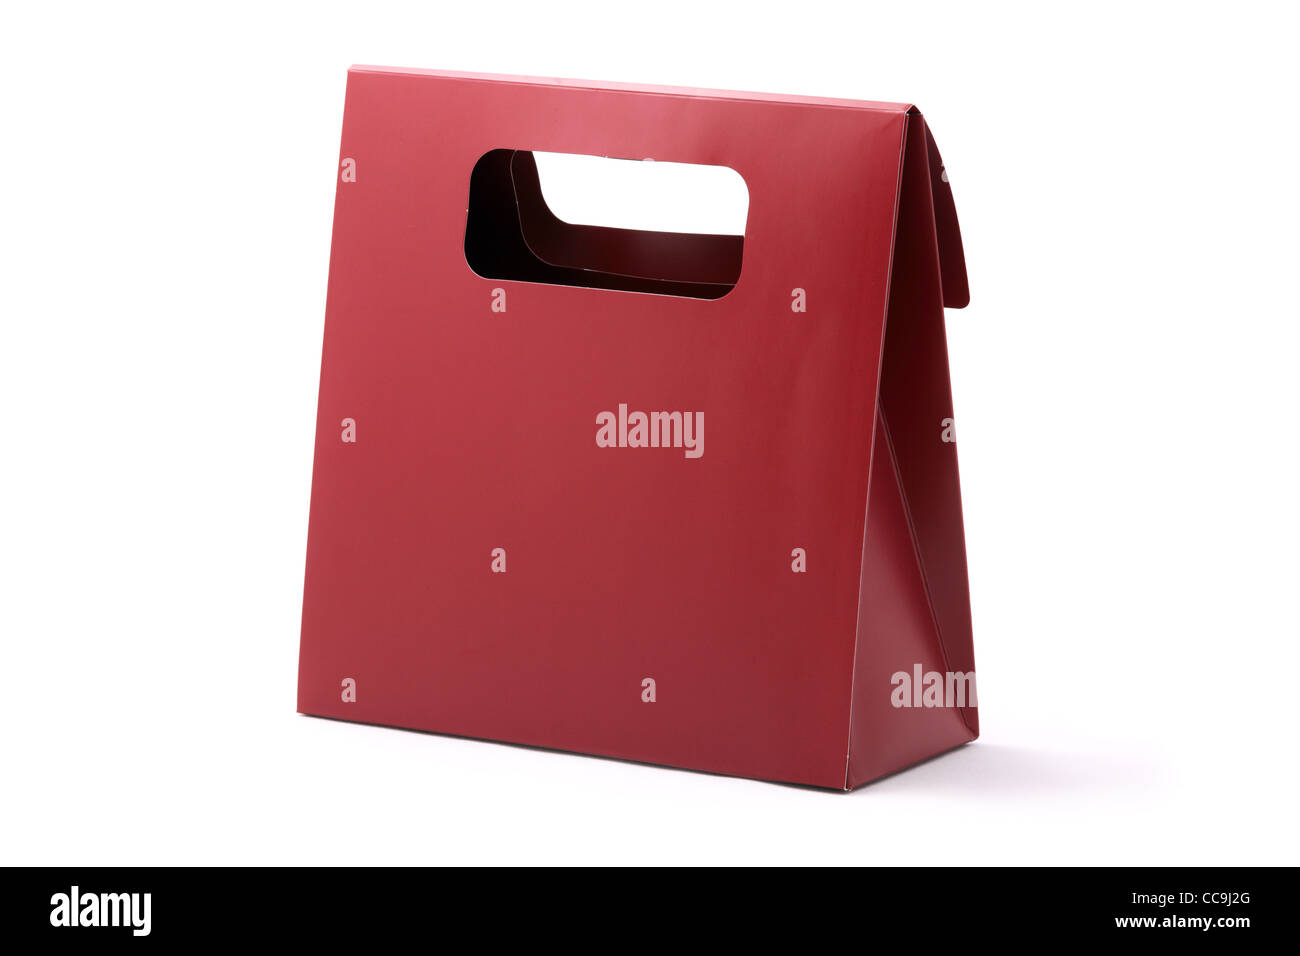 Rote Tasche shopping Karton mit Exemplar isoliert auf einem weißen Hintergrund. Studio gedreht. Stockfoto